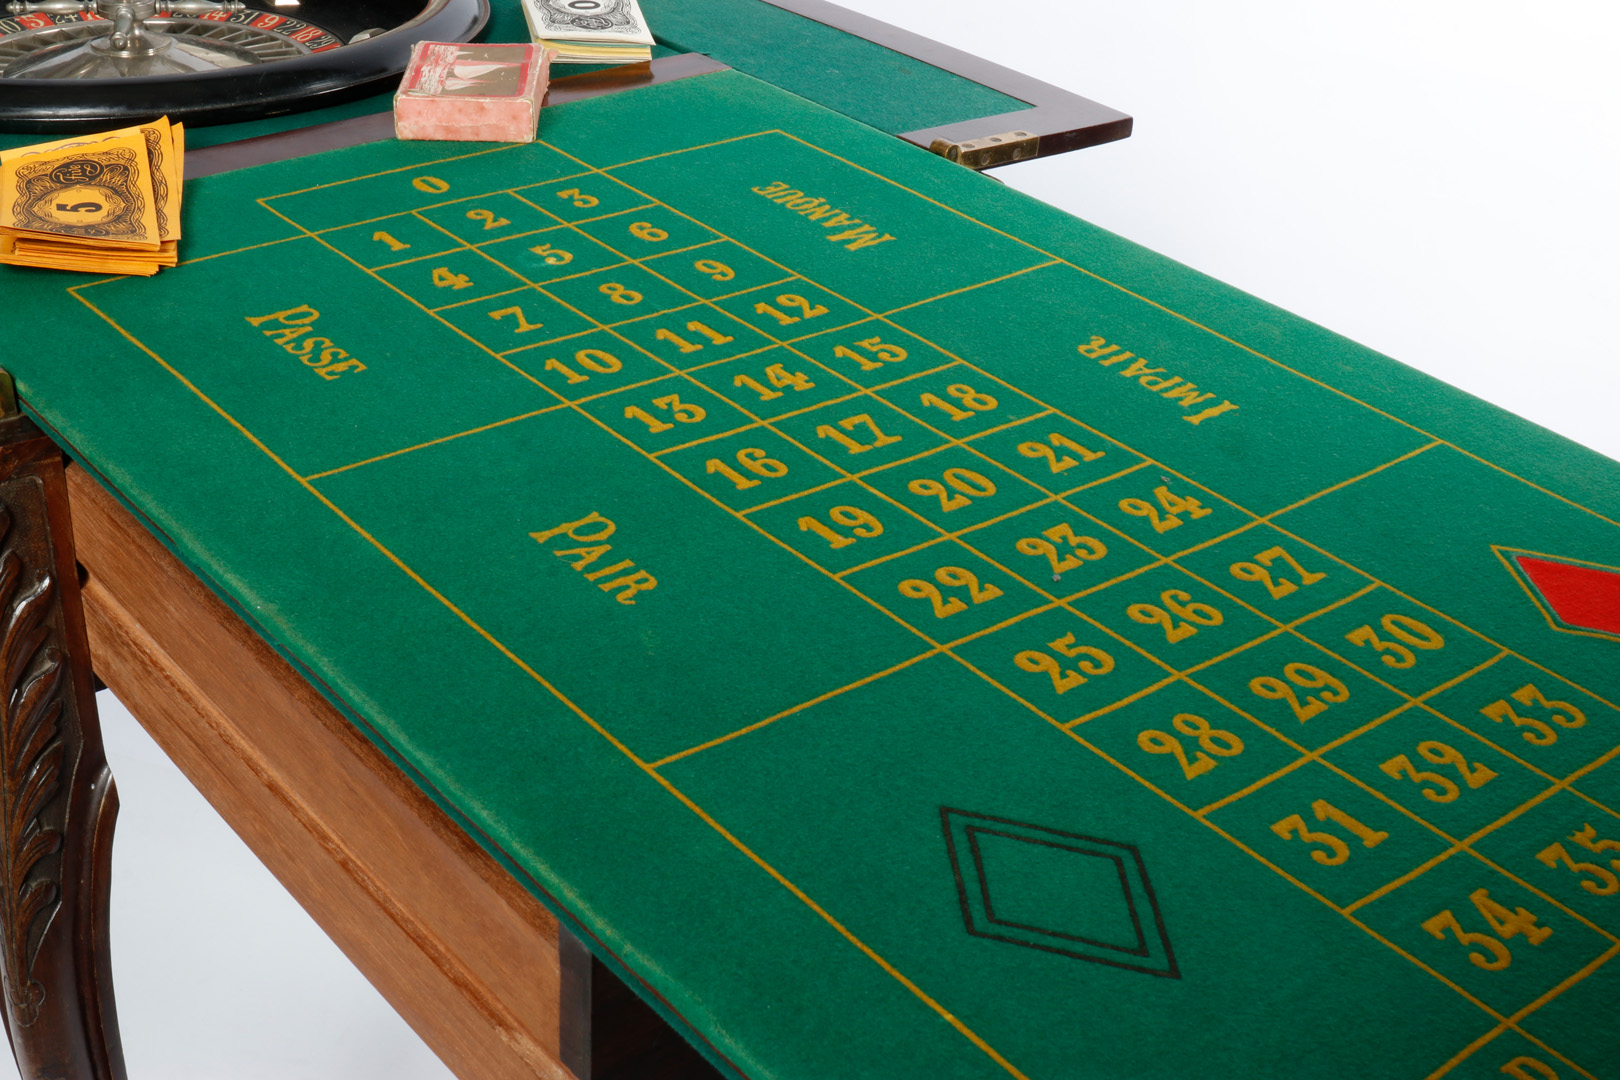 Großer Mahagoni-Spieltisch, aufklappbar, für Roulette-Spiel, grün befilzt, mit Drehteller, Kugel, - Image 5 of 7